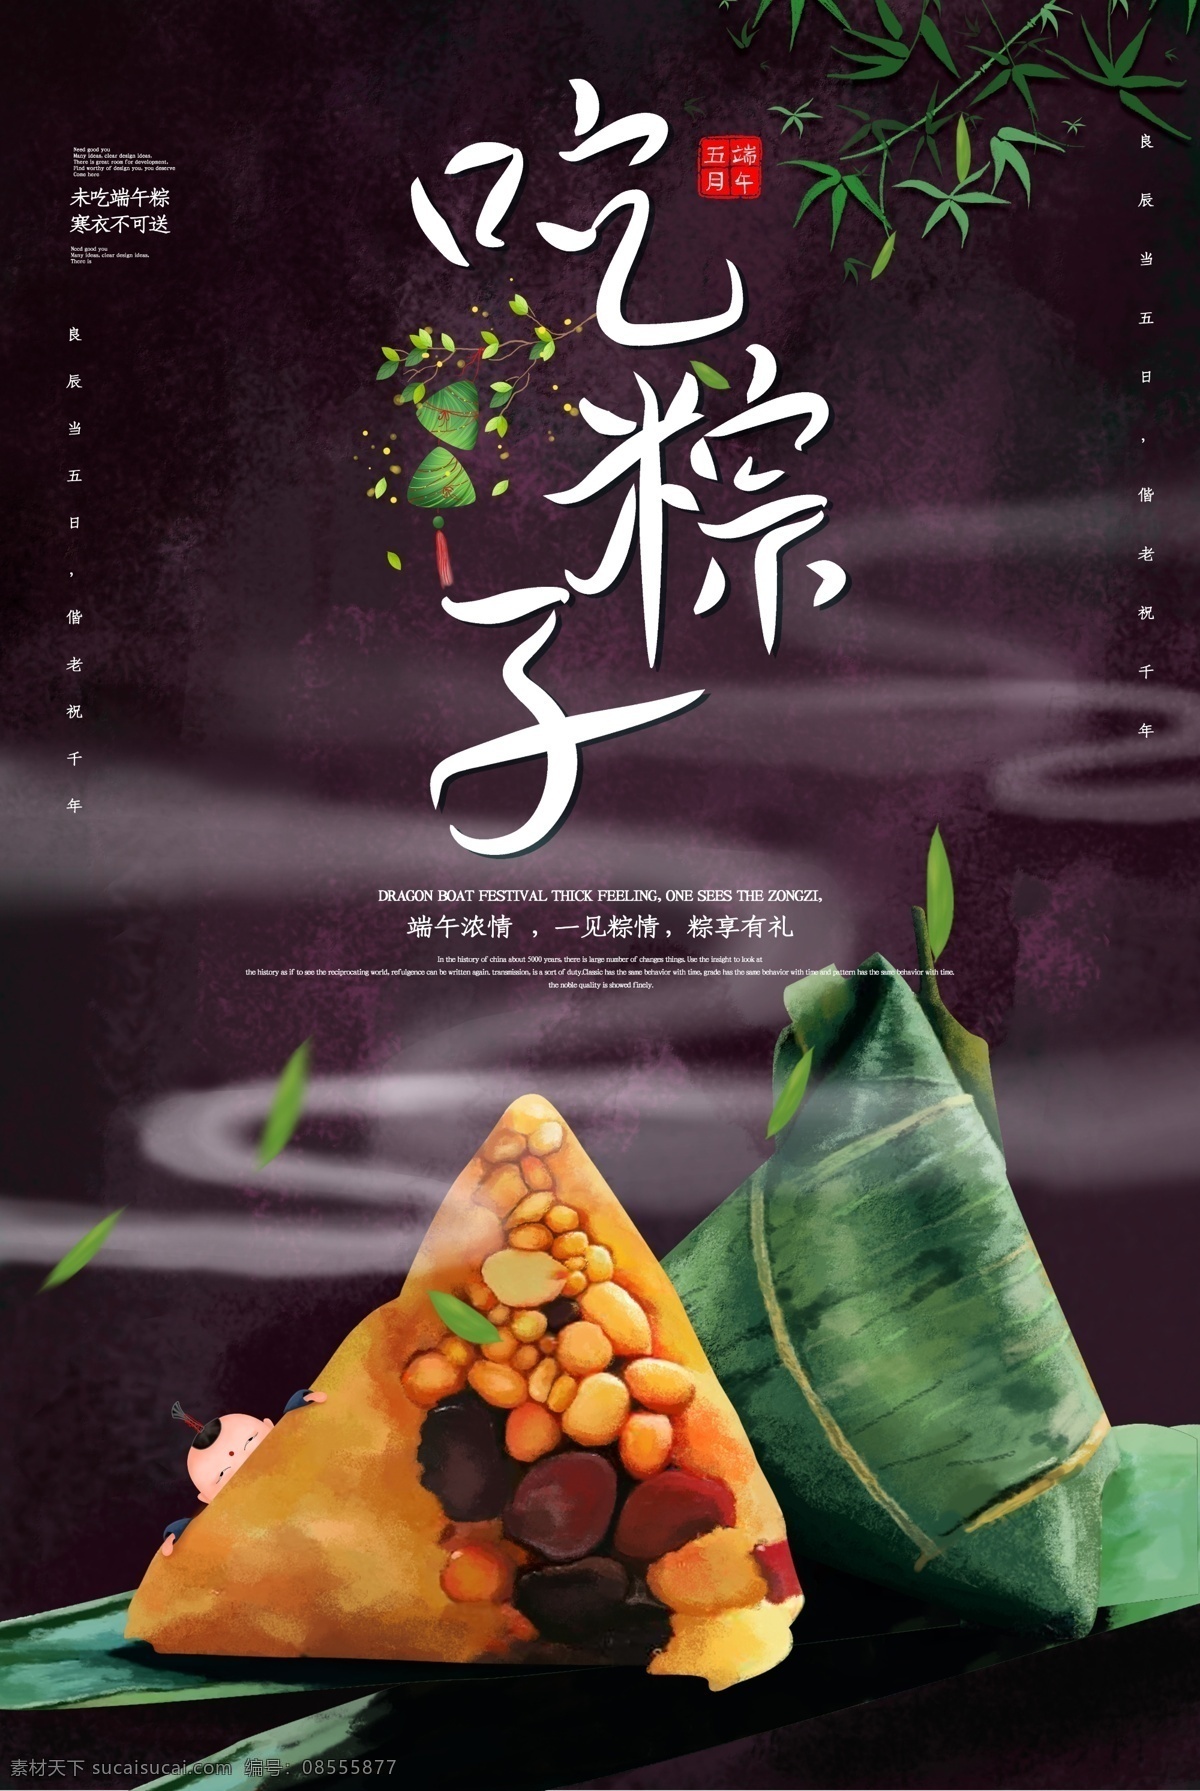 吃粽子图片 全家 包粽子 吃粽子 插画 端午节 粽子 海报